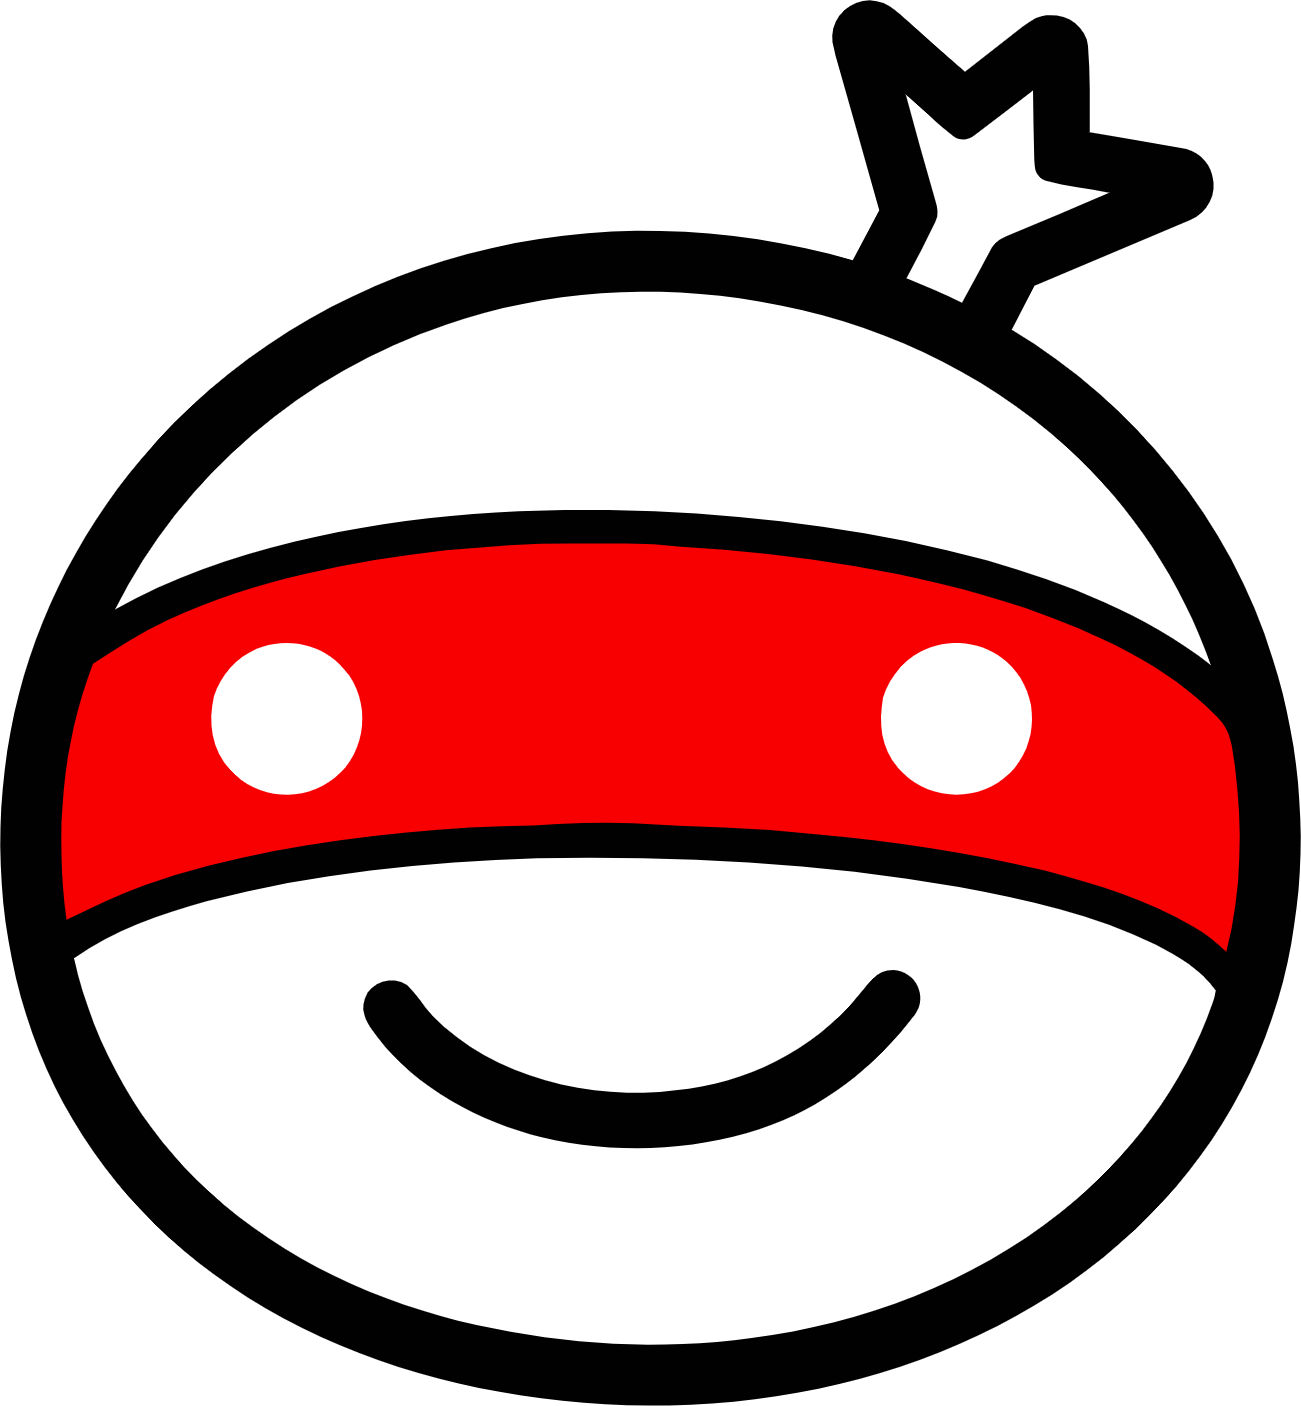 Monotaro logo (PNG transparent)